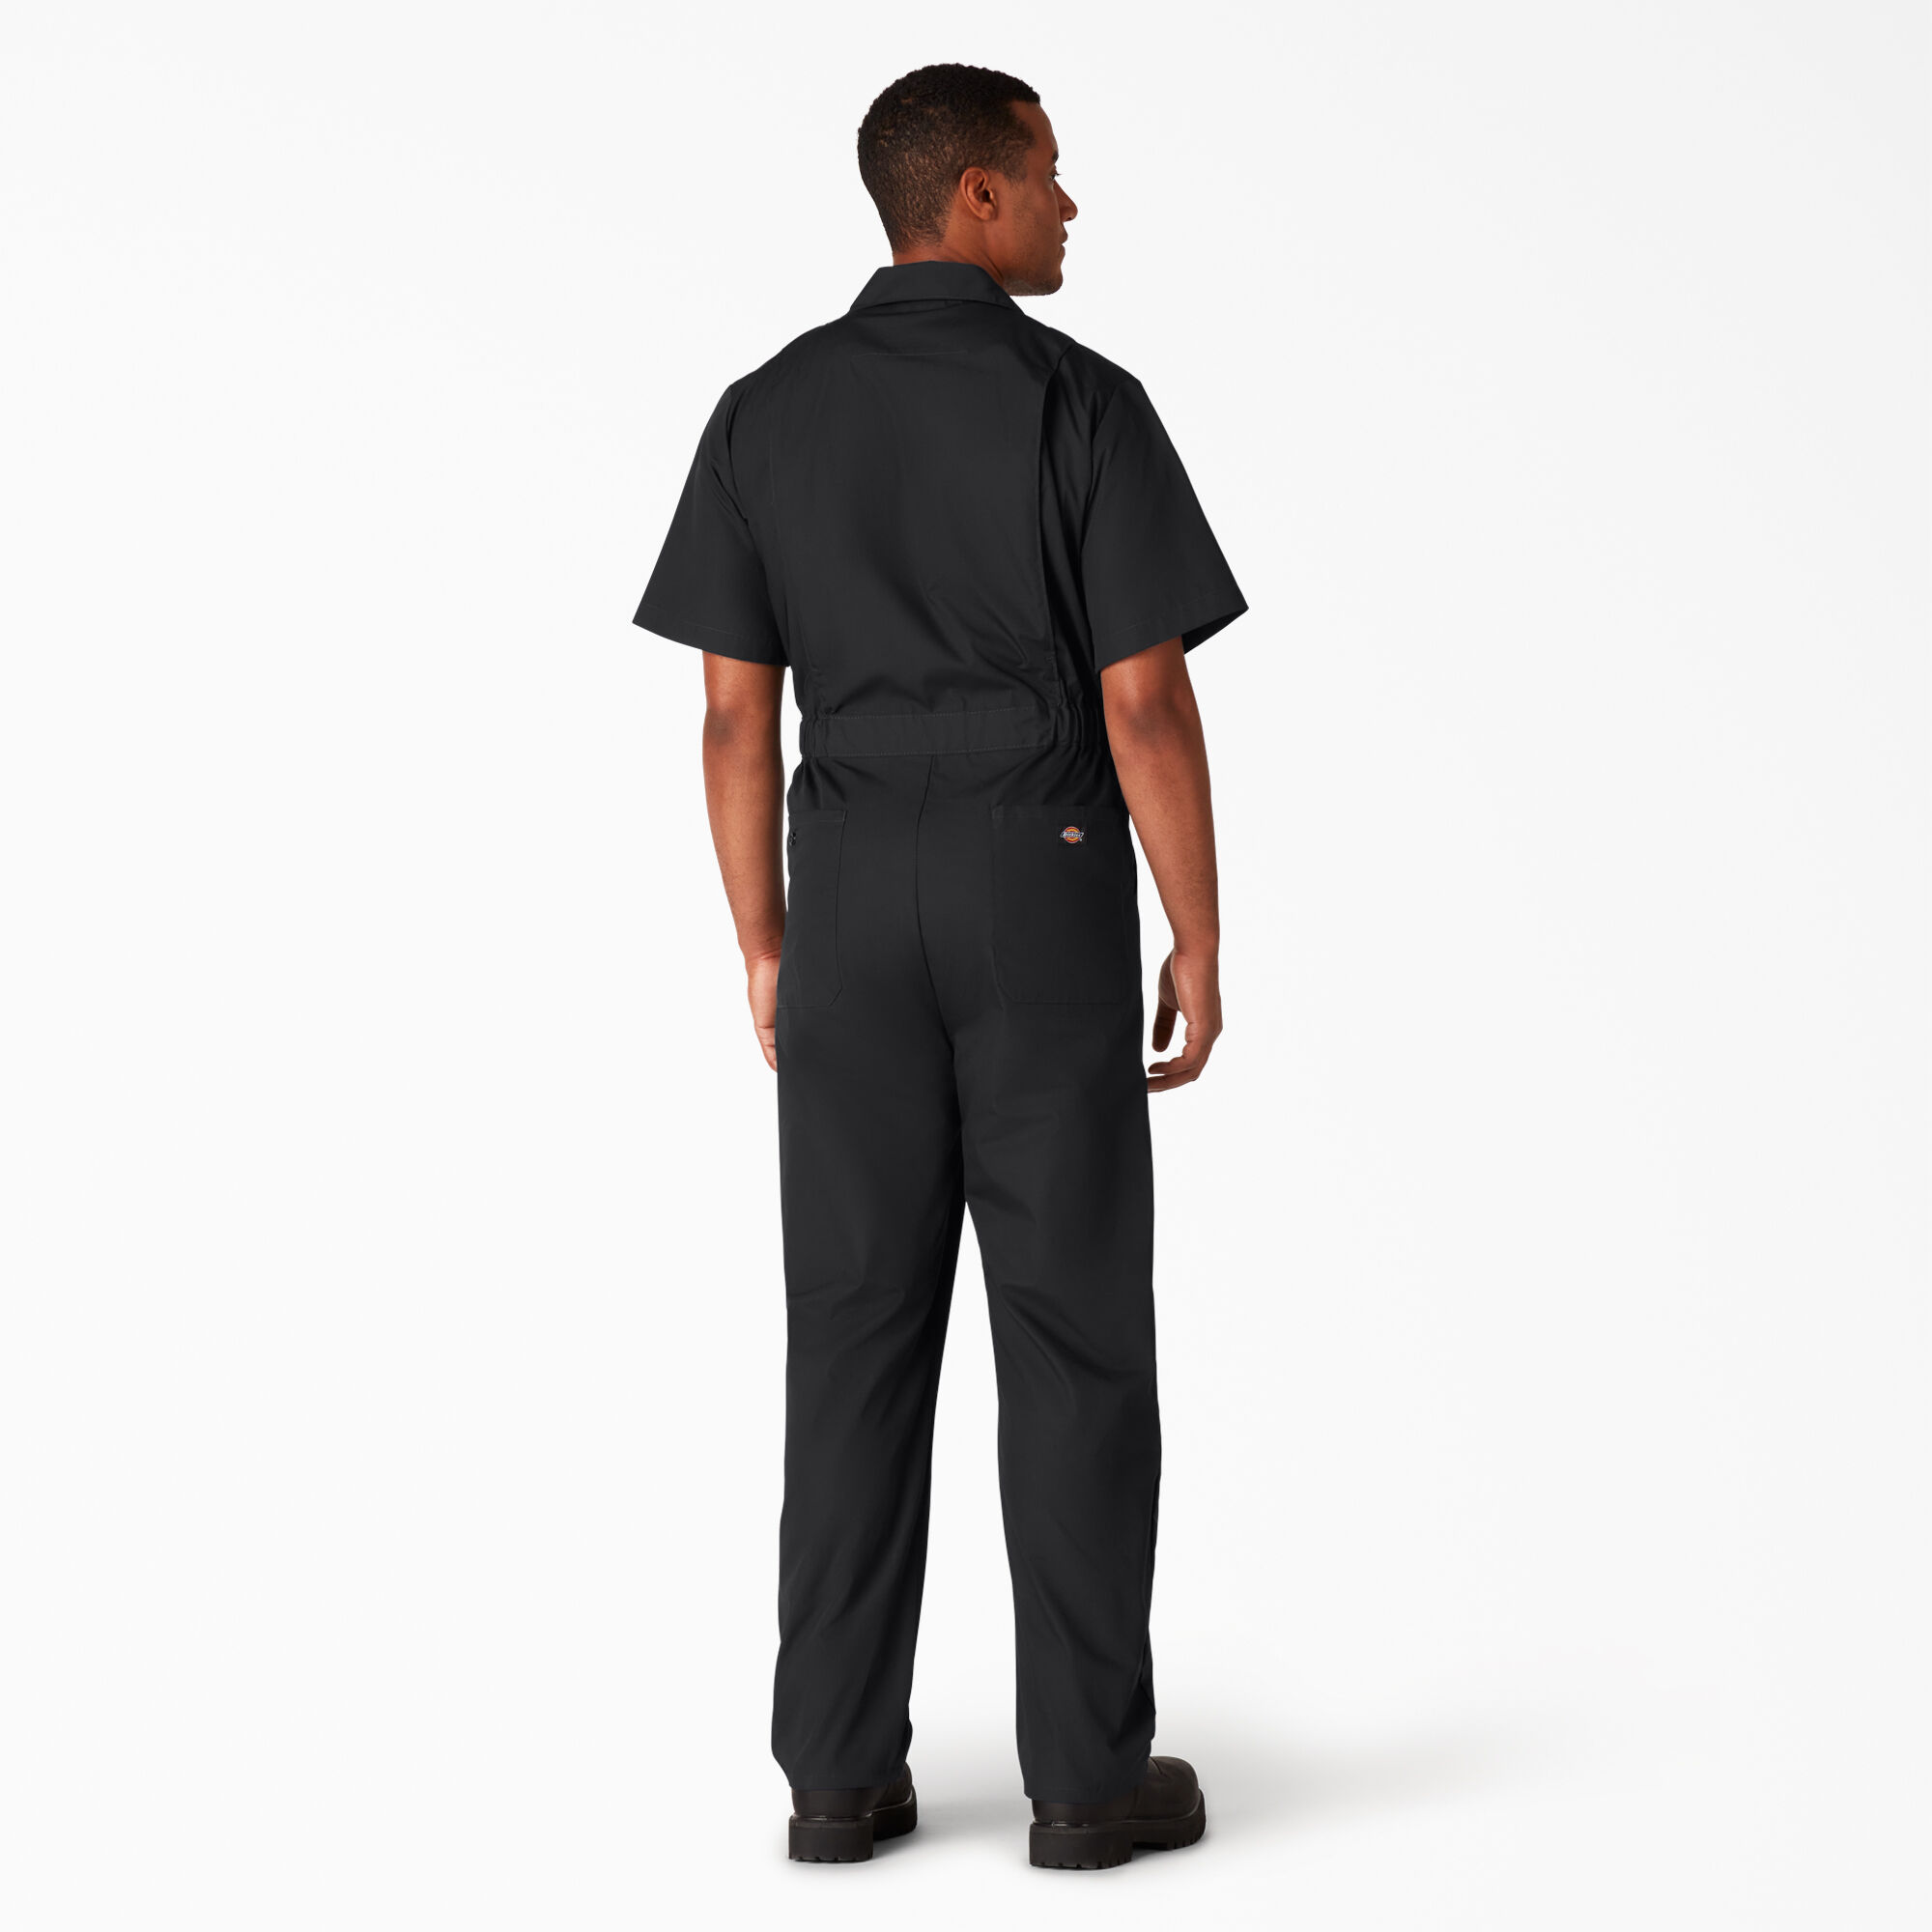 Details about   Dickies Men's Short Sleeve Coveralls Comfort Elastic Waist Work Men's. 